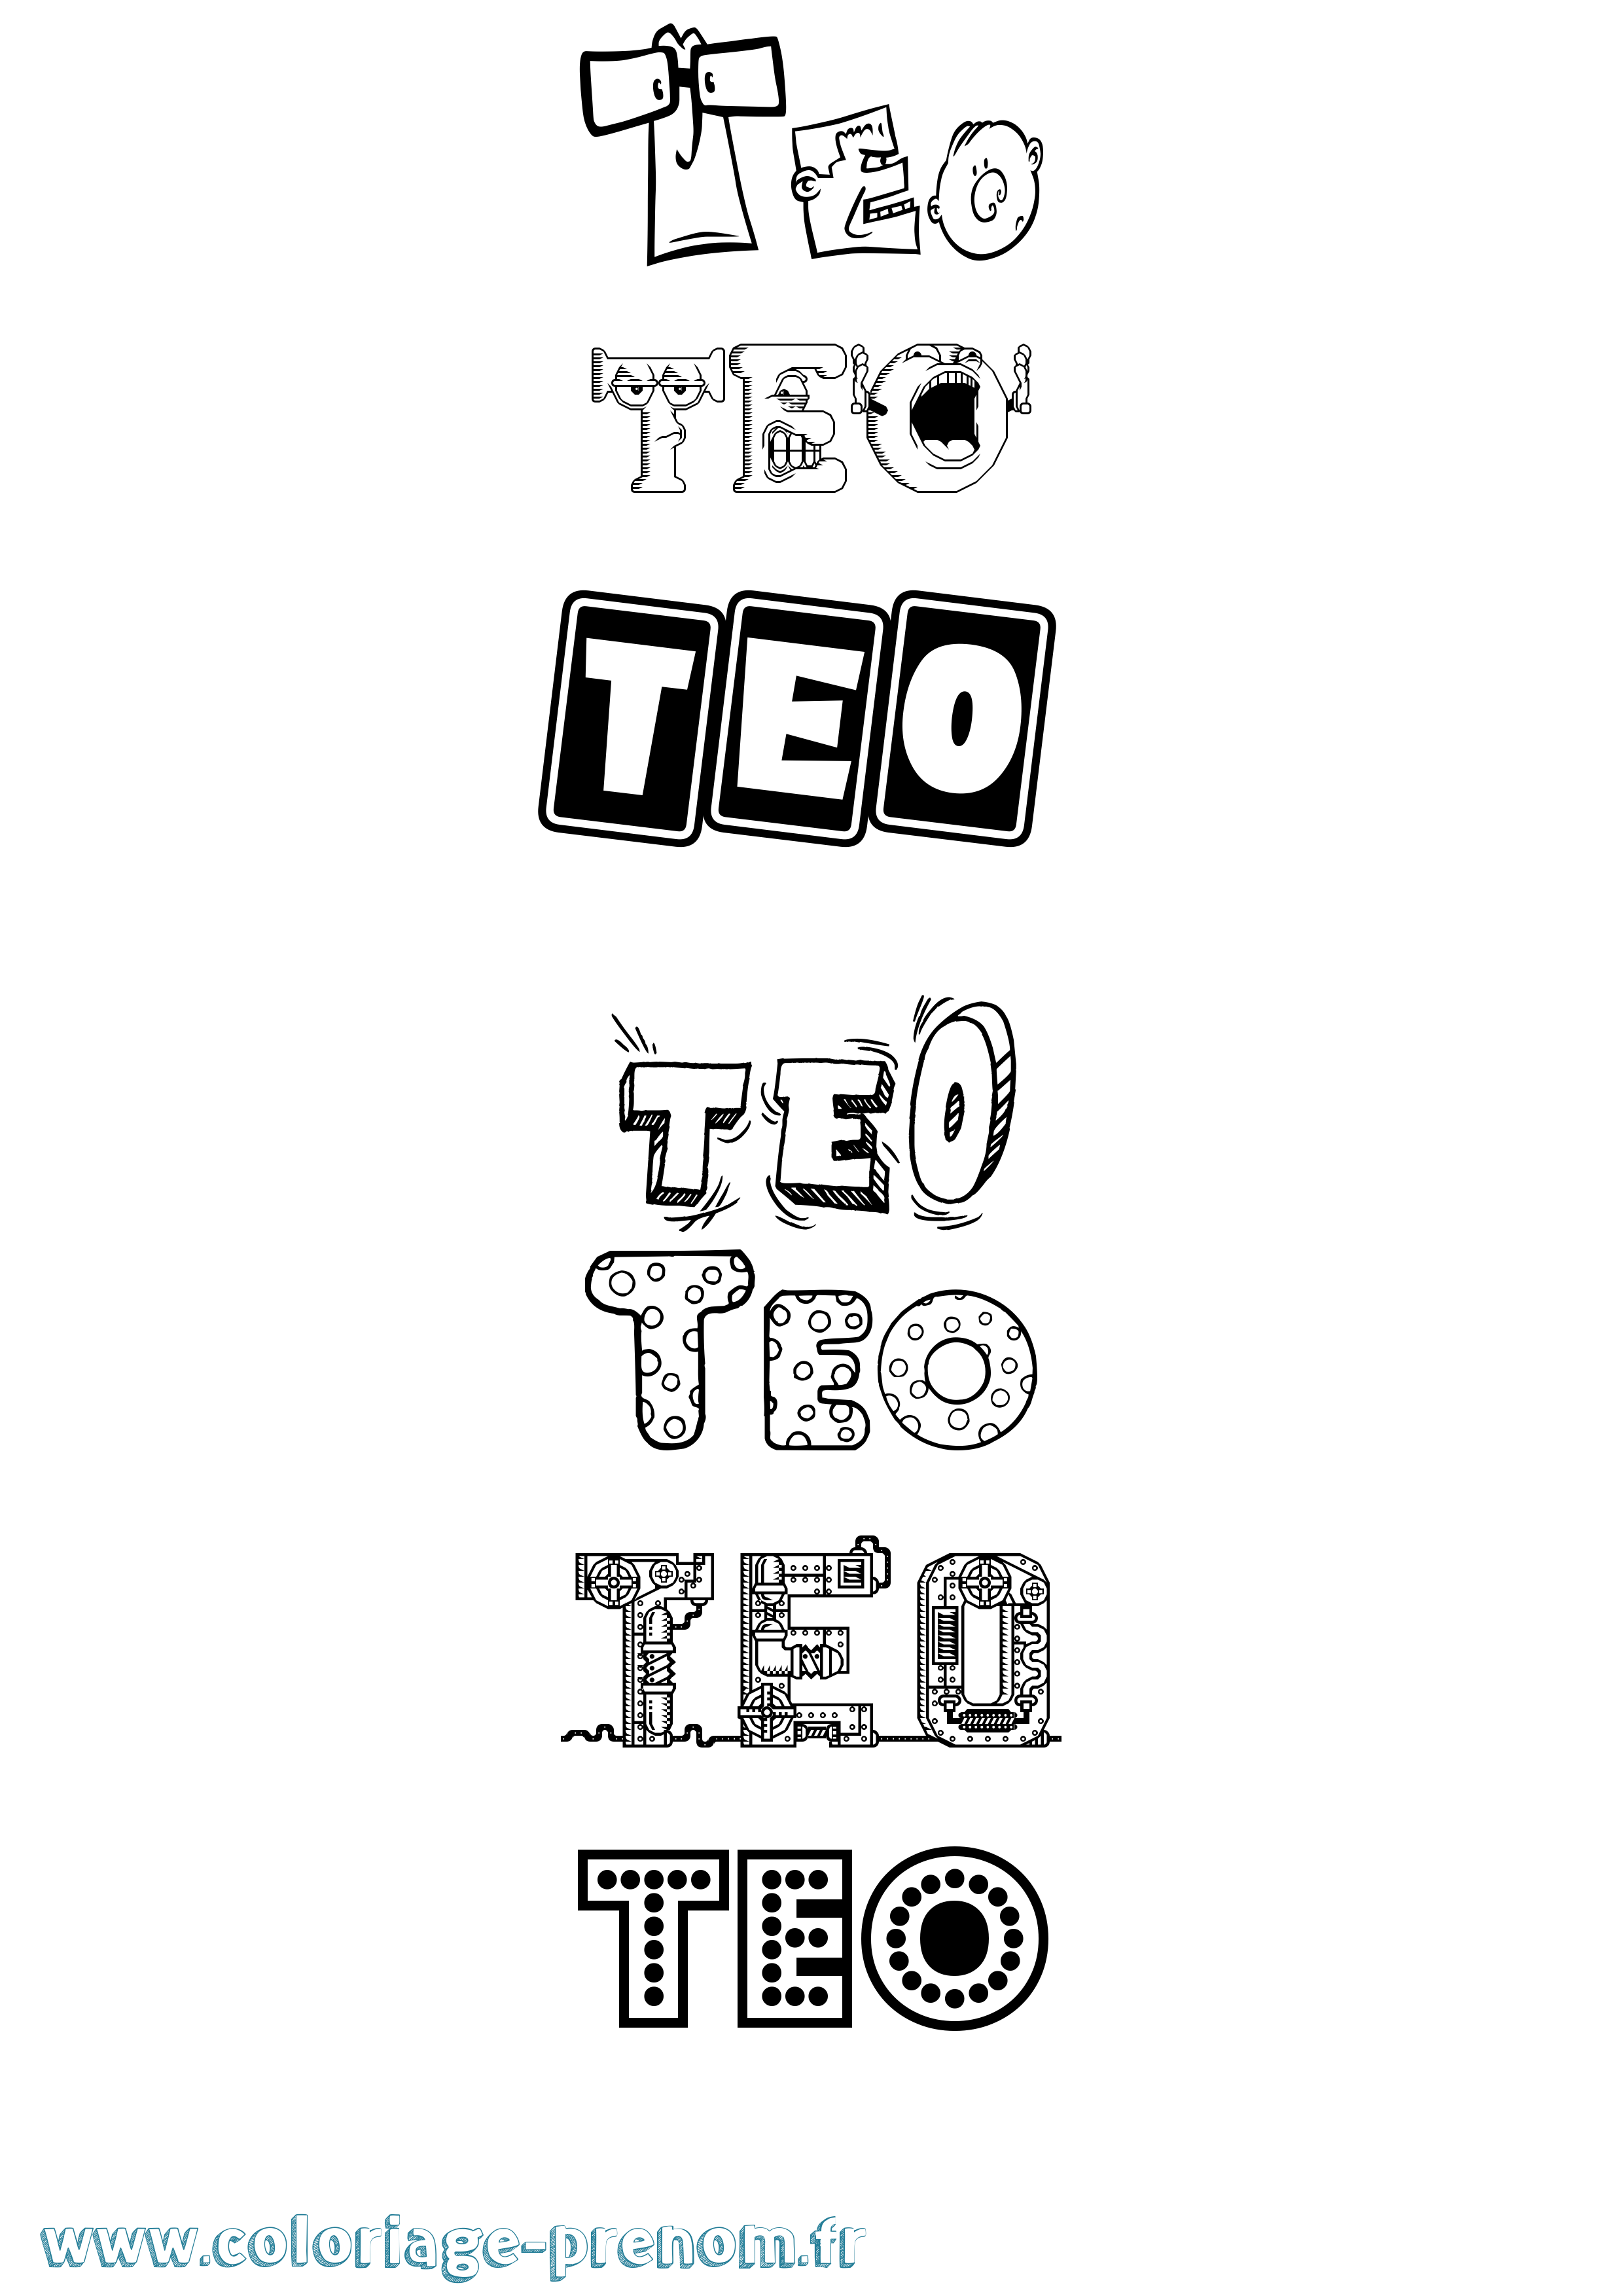 Coloriage prénom Teo Fun